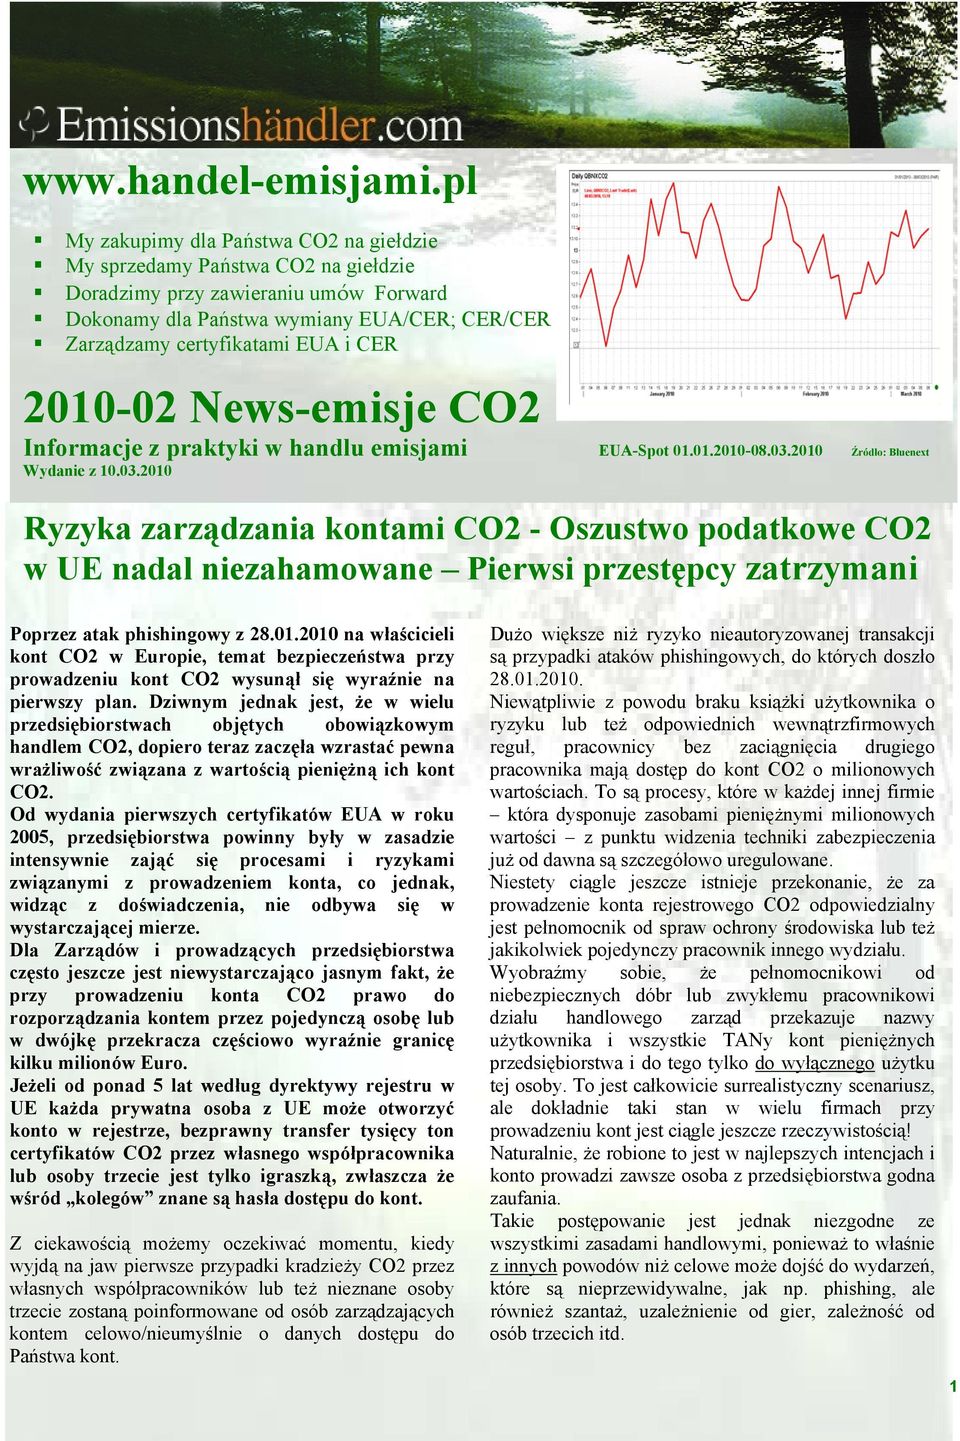 2010-02 News-emisje CO2 Informacje z praktyki w handlu emisjami EUA-Spot 01.01.2010-08.03.